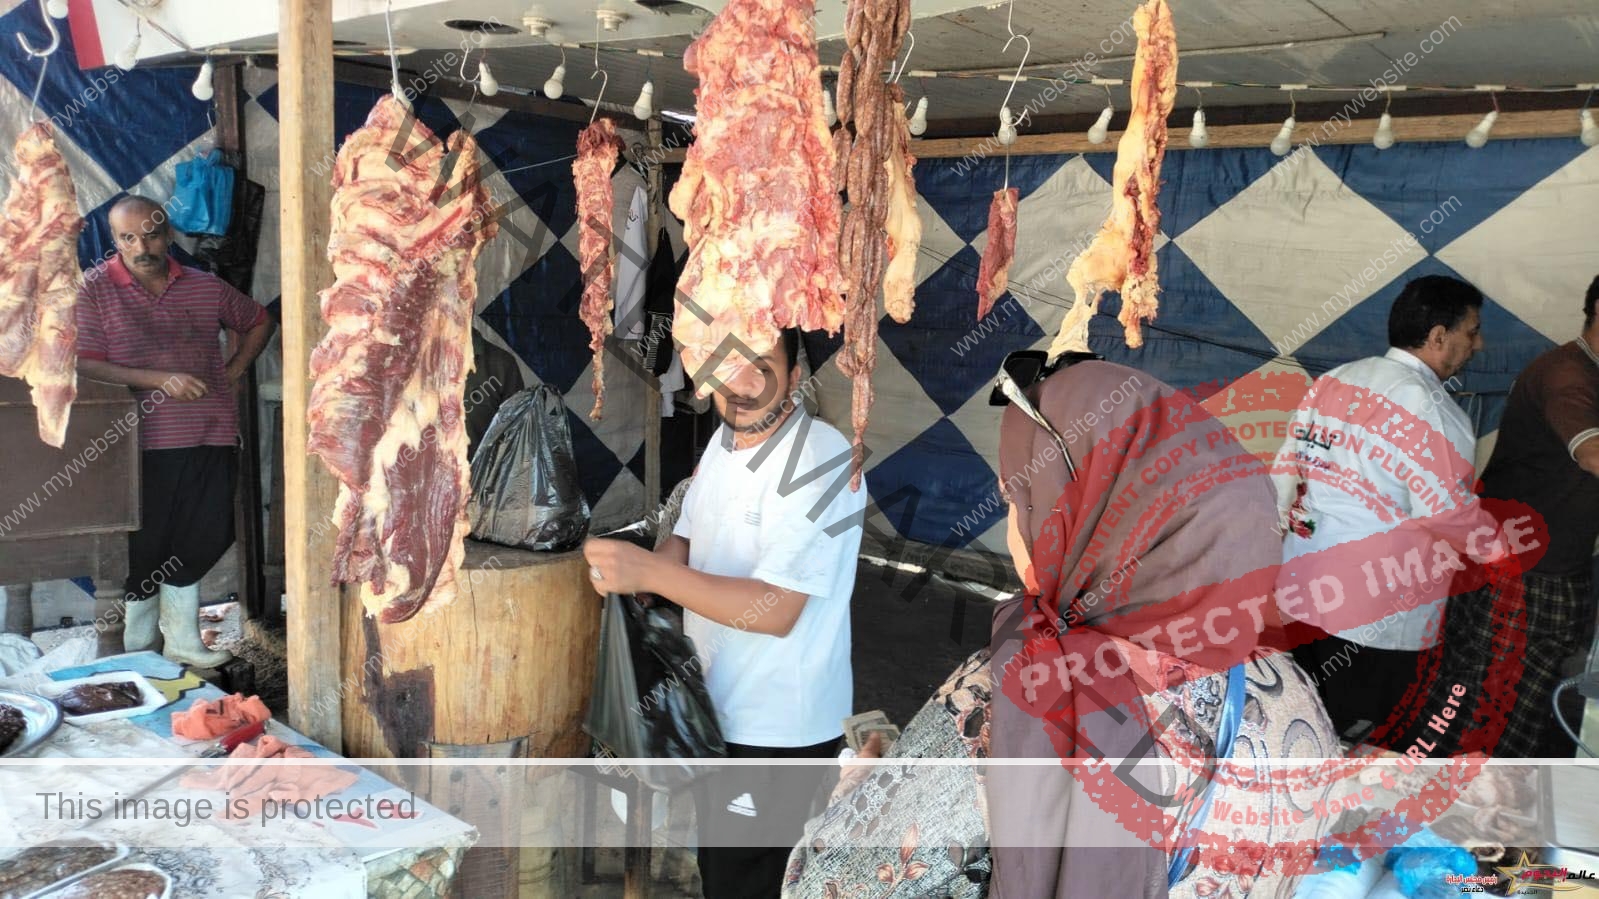 محافظ الإسكندرية: يعلن عن إنطلاق مبادرة "الإسكندرية ضد الغلاء" لتوفير اللحوم البلدي بسعر 220 جنيه للكيلو